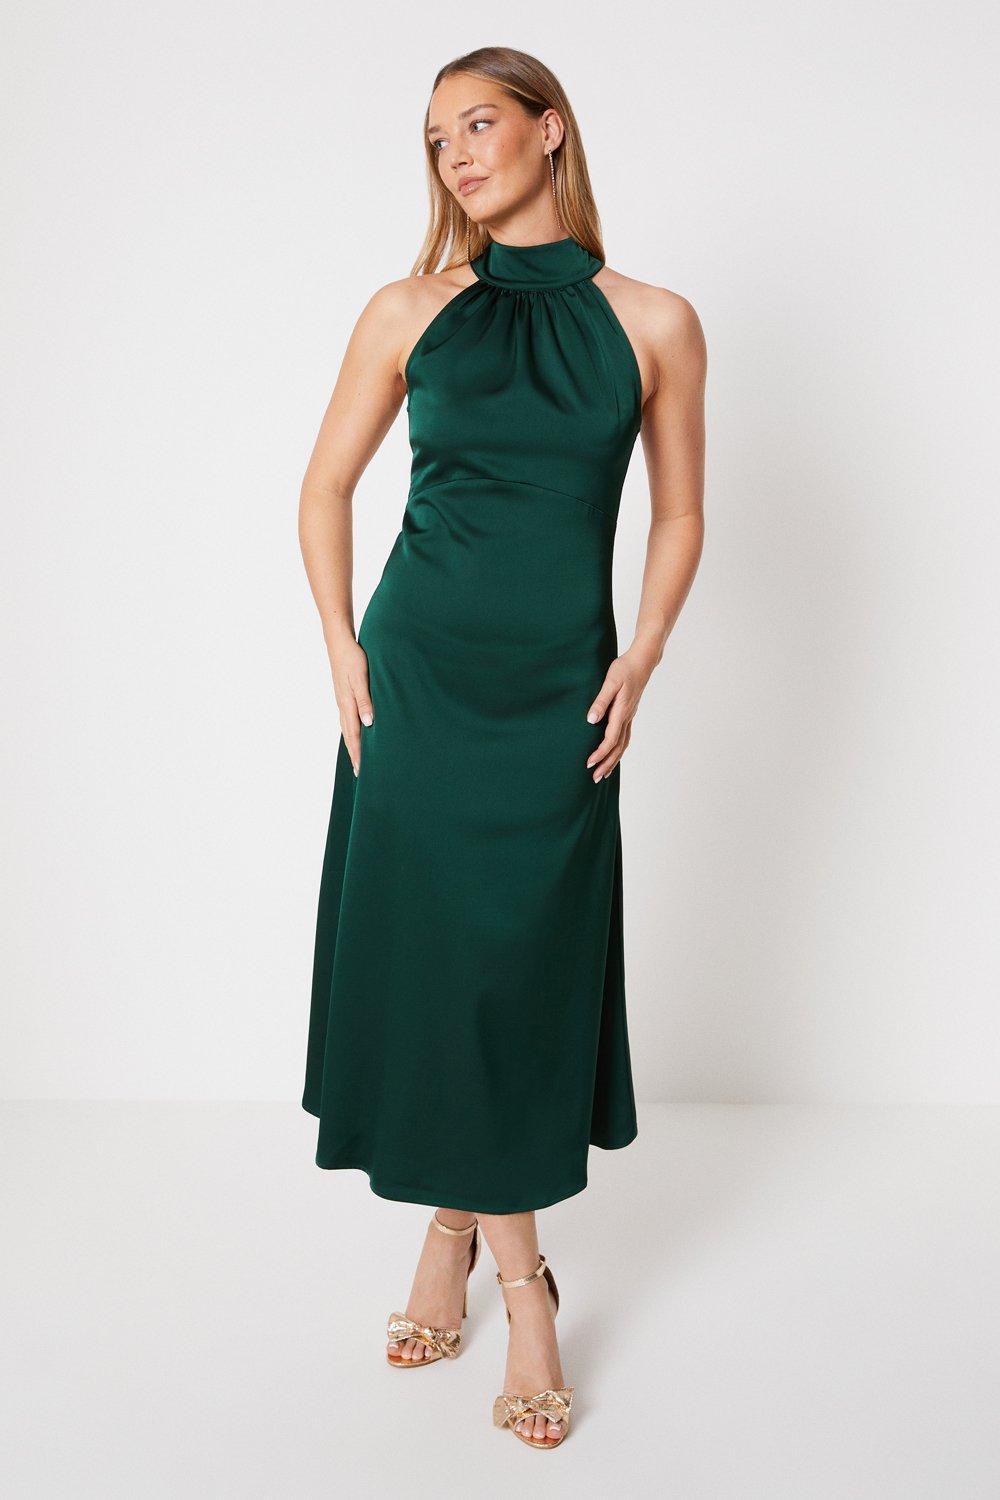 Атласное платье миди с вырезом через шею Oasis, зеленый миниатюрное атласное платье миди с вырезом через шею и бретелькой oasis зеленый